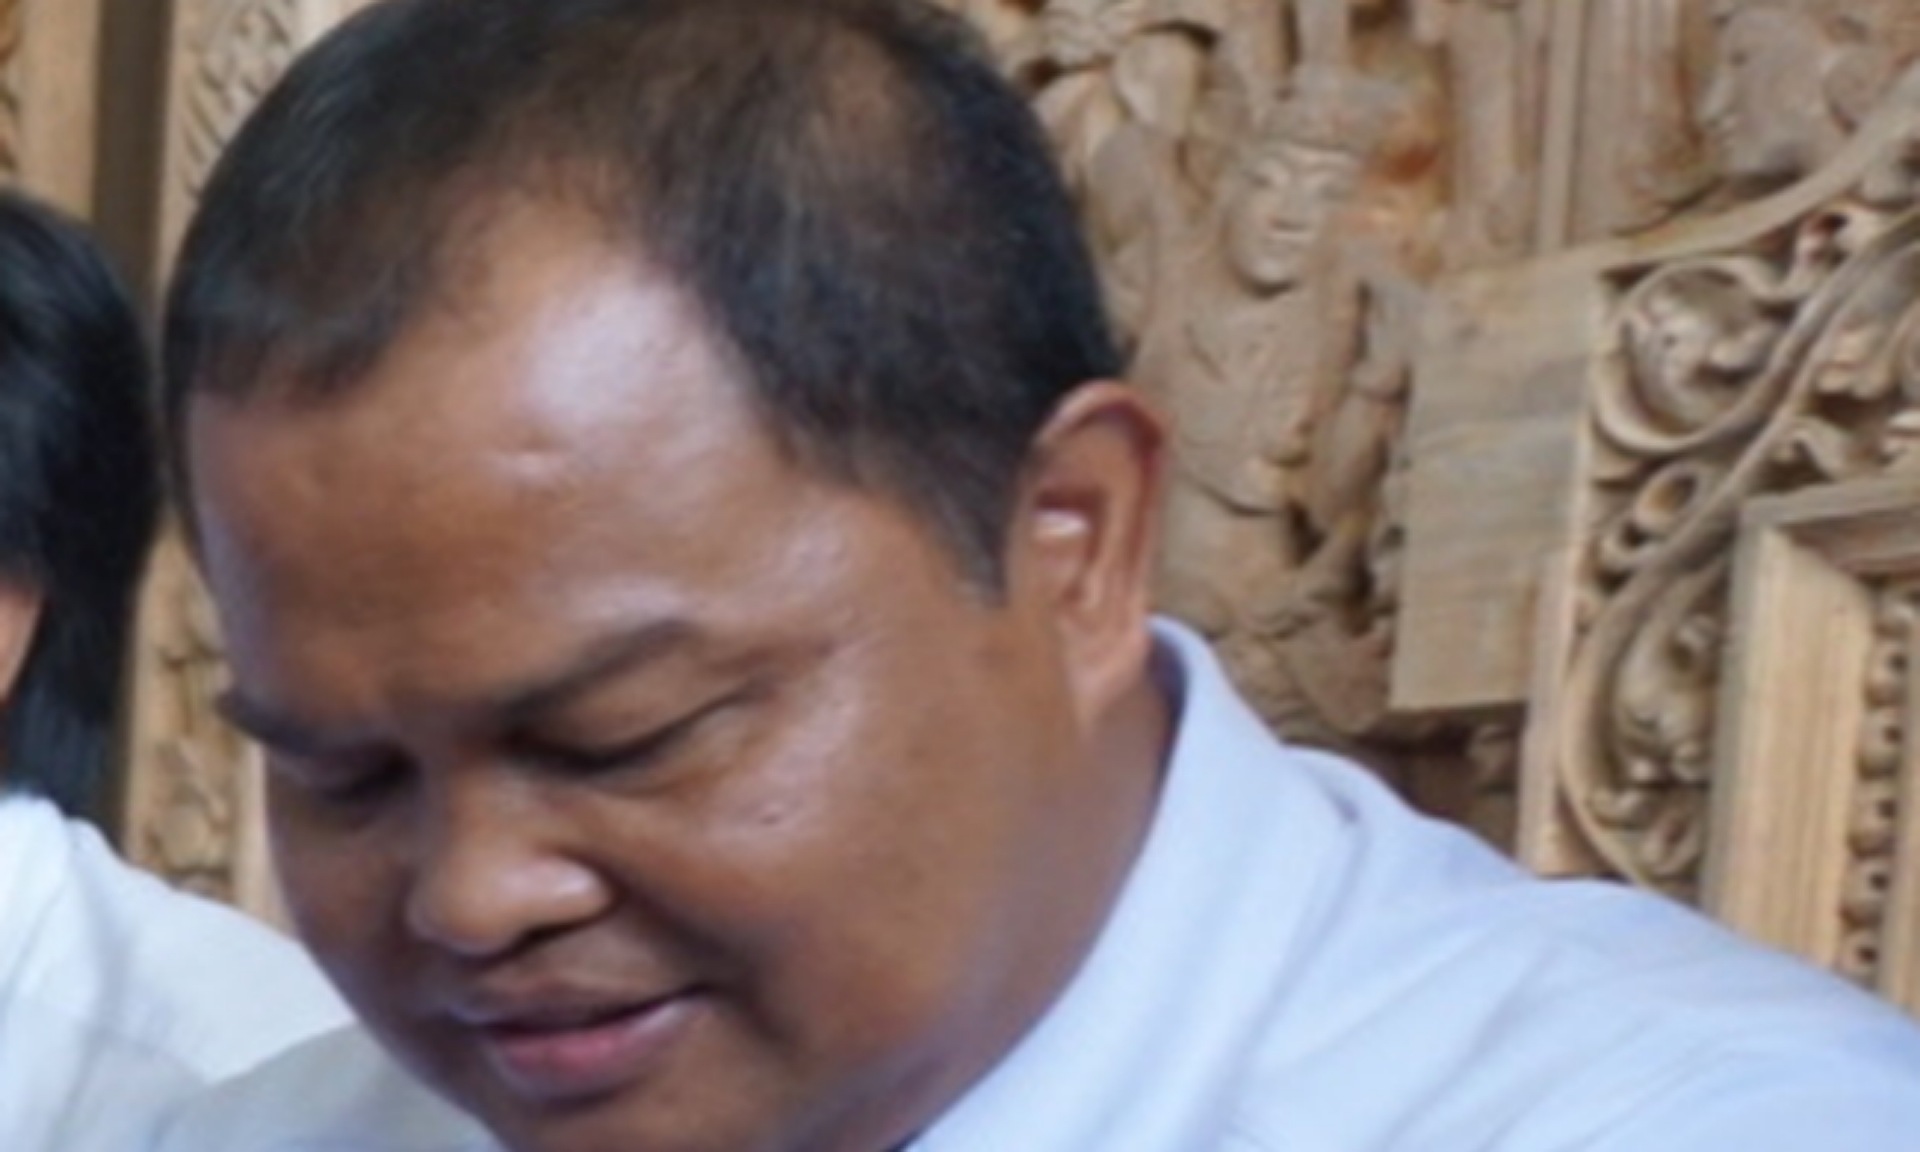 Ketua Kadin Bali Ngaku Kasih Rp 16 M ke Anak Eks Gubernur, Ini Kata Polisi